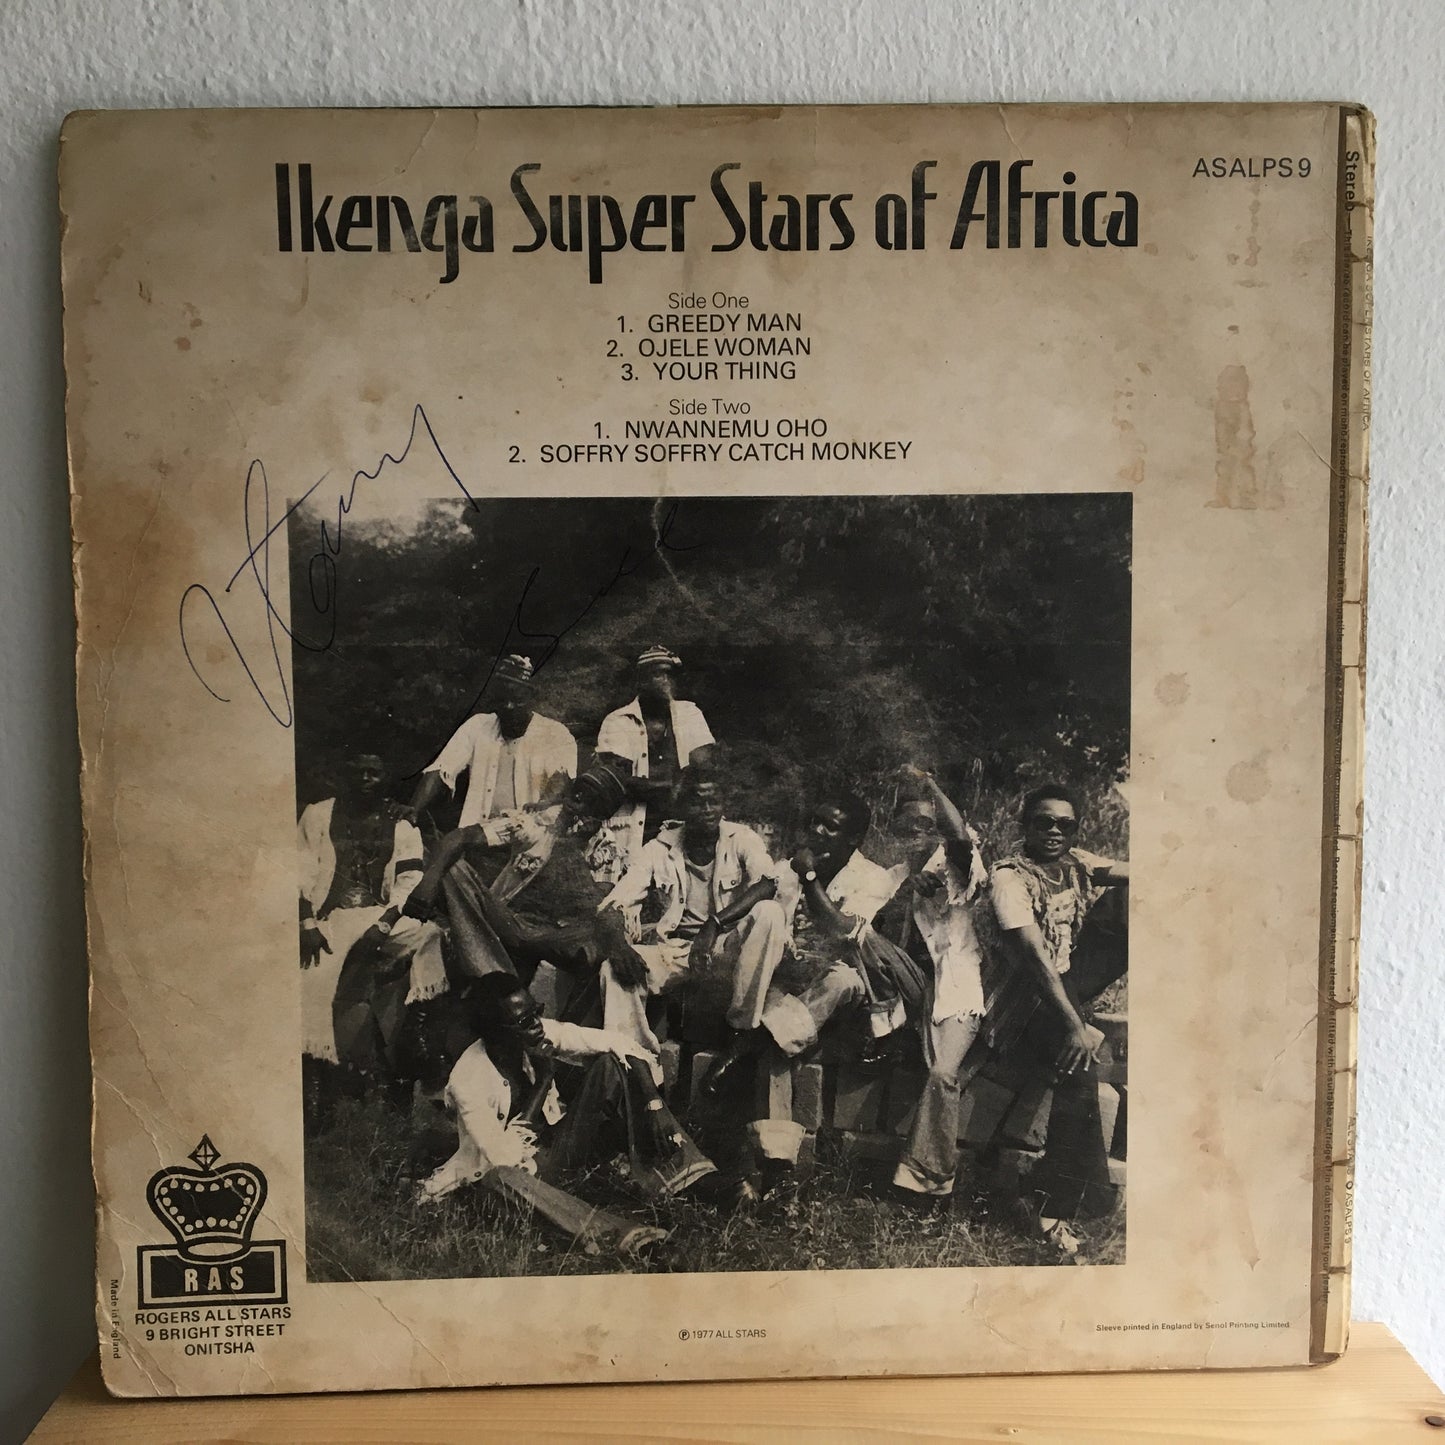 Ikenga 非洲超级明星 – Ikenga 非洲超级明星